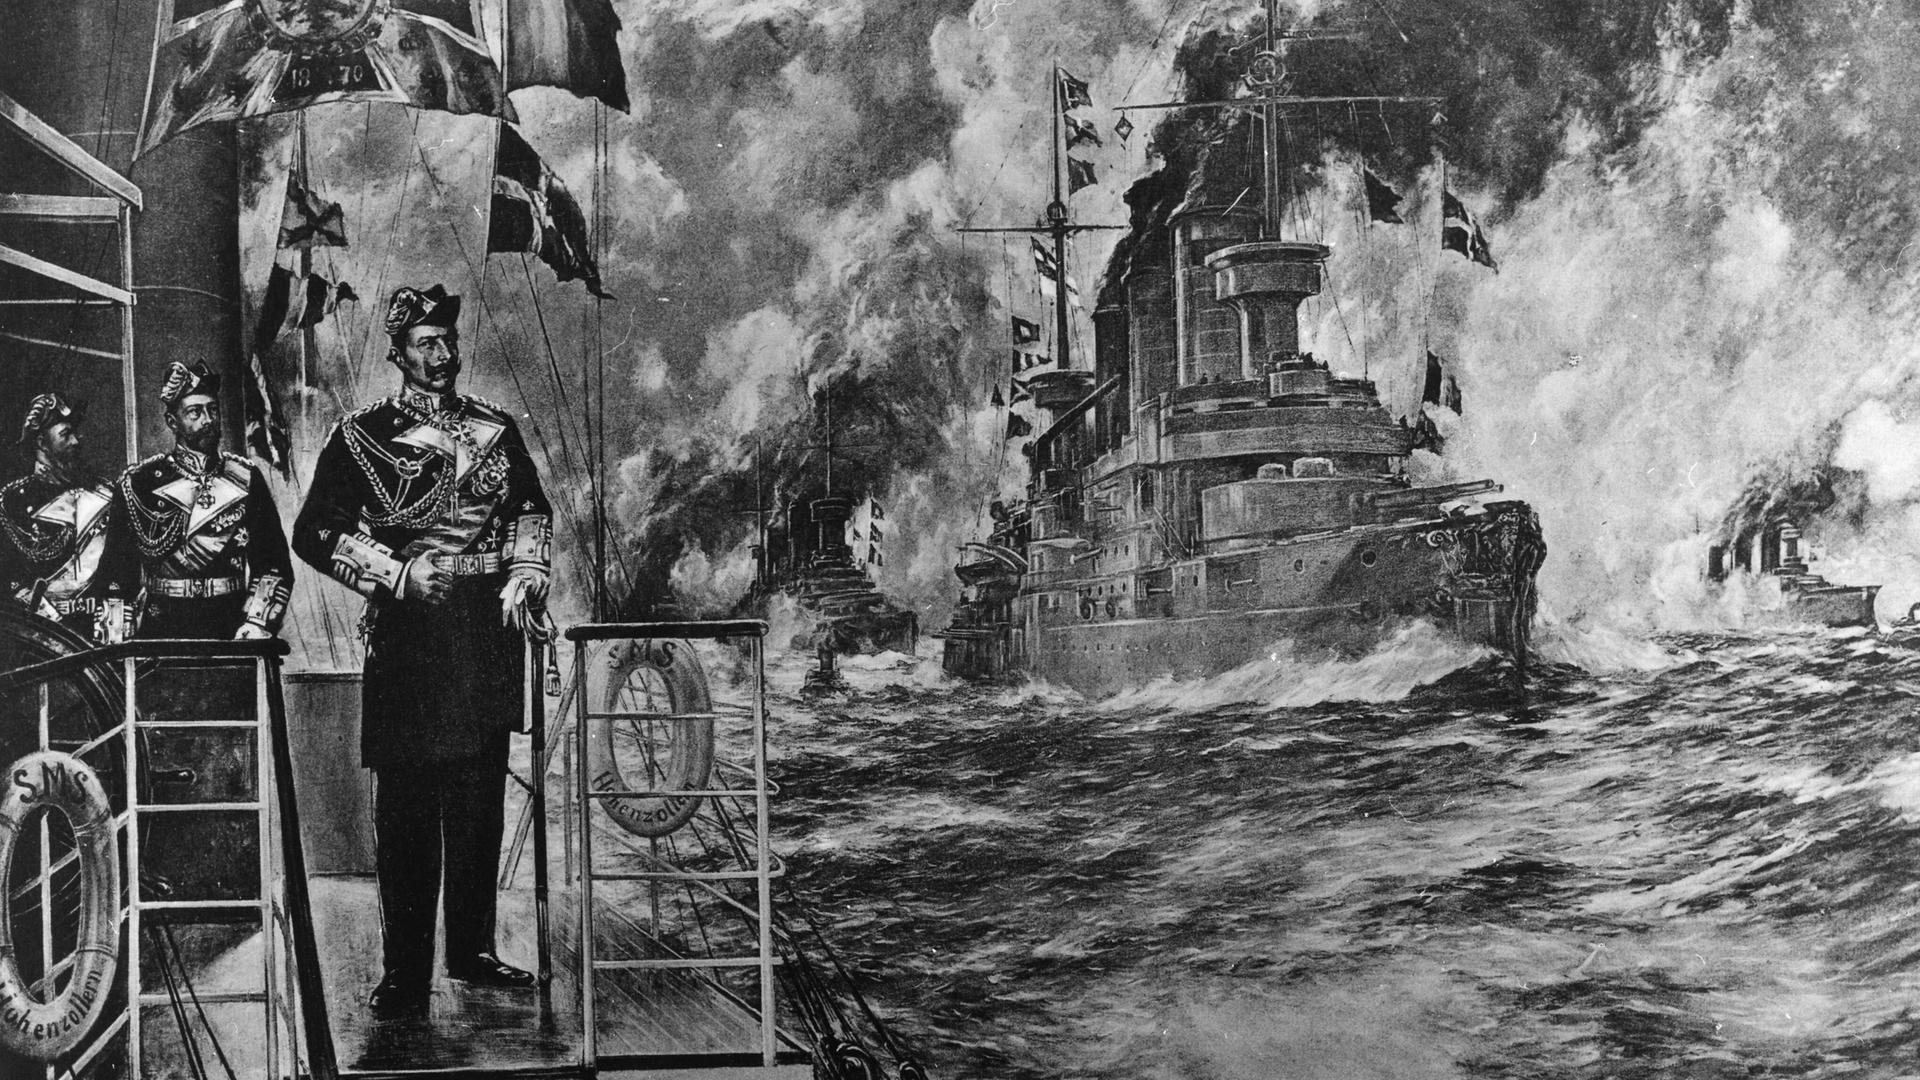 Das Wandgemälde "Kaiser Wilhelm und seine Flotte" von 1906 den deutschen Kaiser Wilhelm II., Prinz Heinrich und Großadmiral Alfred von Tirpitz. 